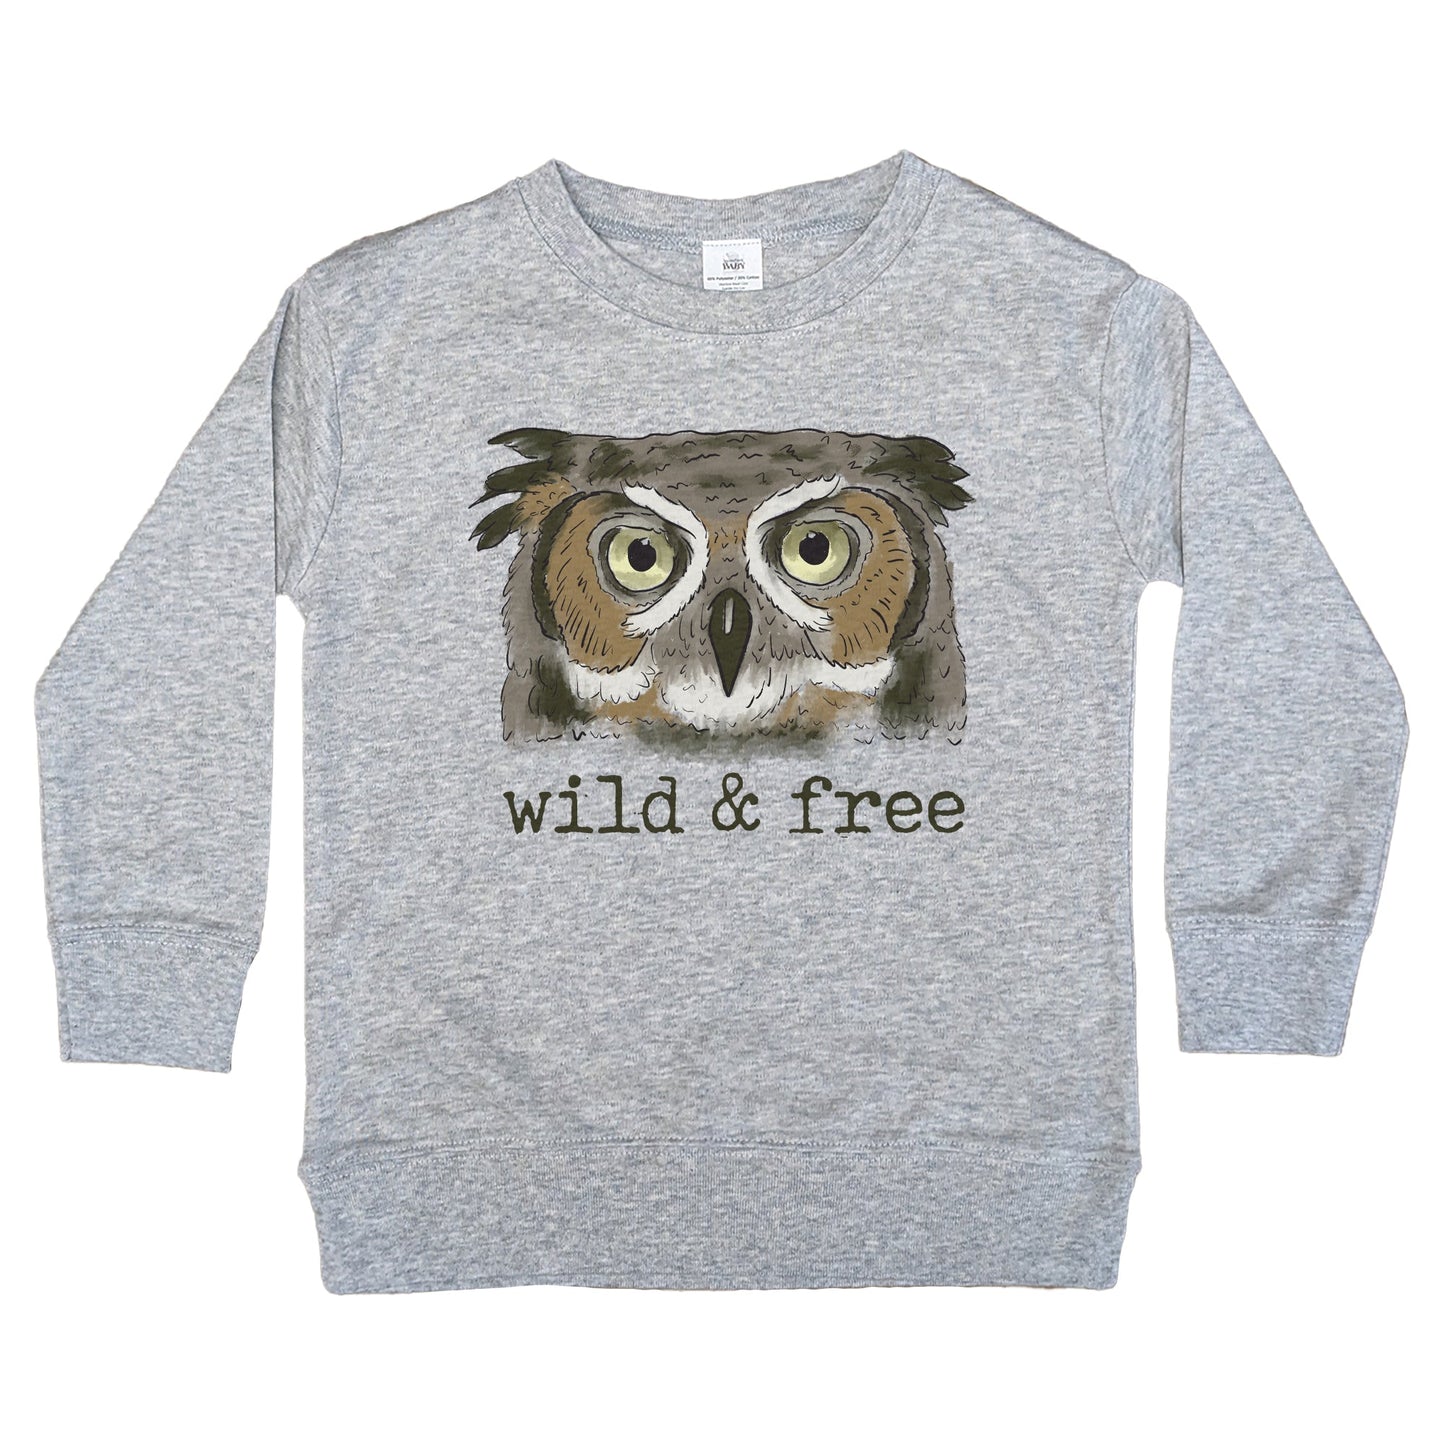 "Wild & Free" Woodland Owl Toddler/Youth Long Sleeve Shirt